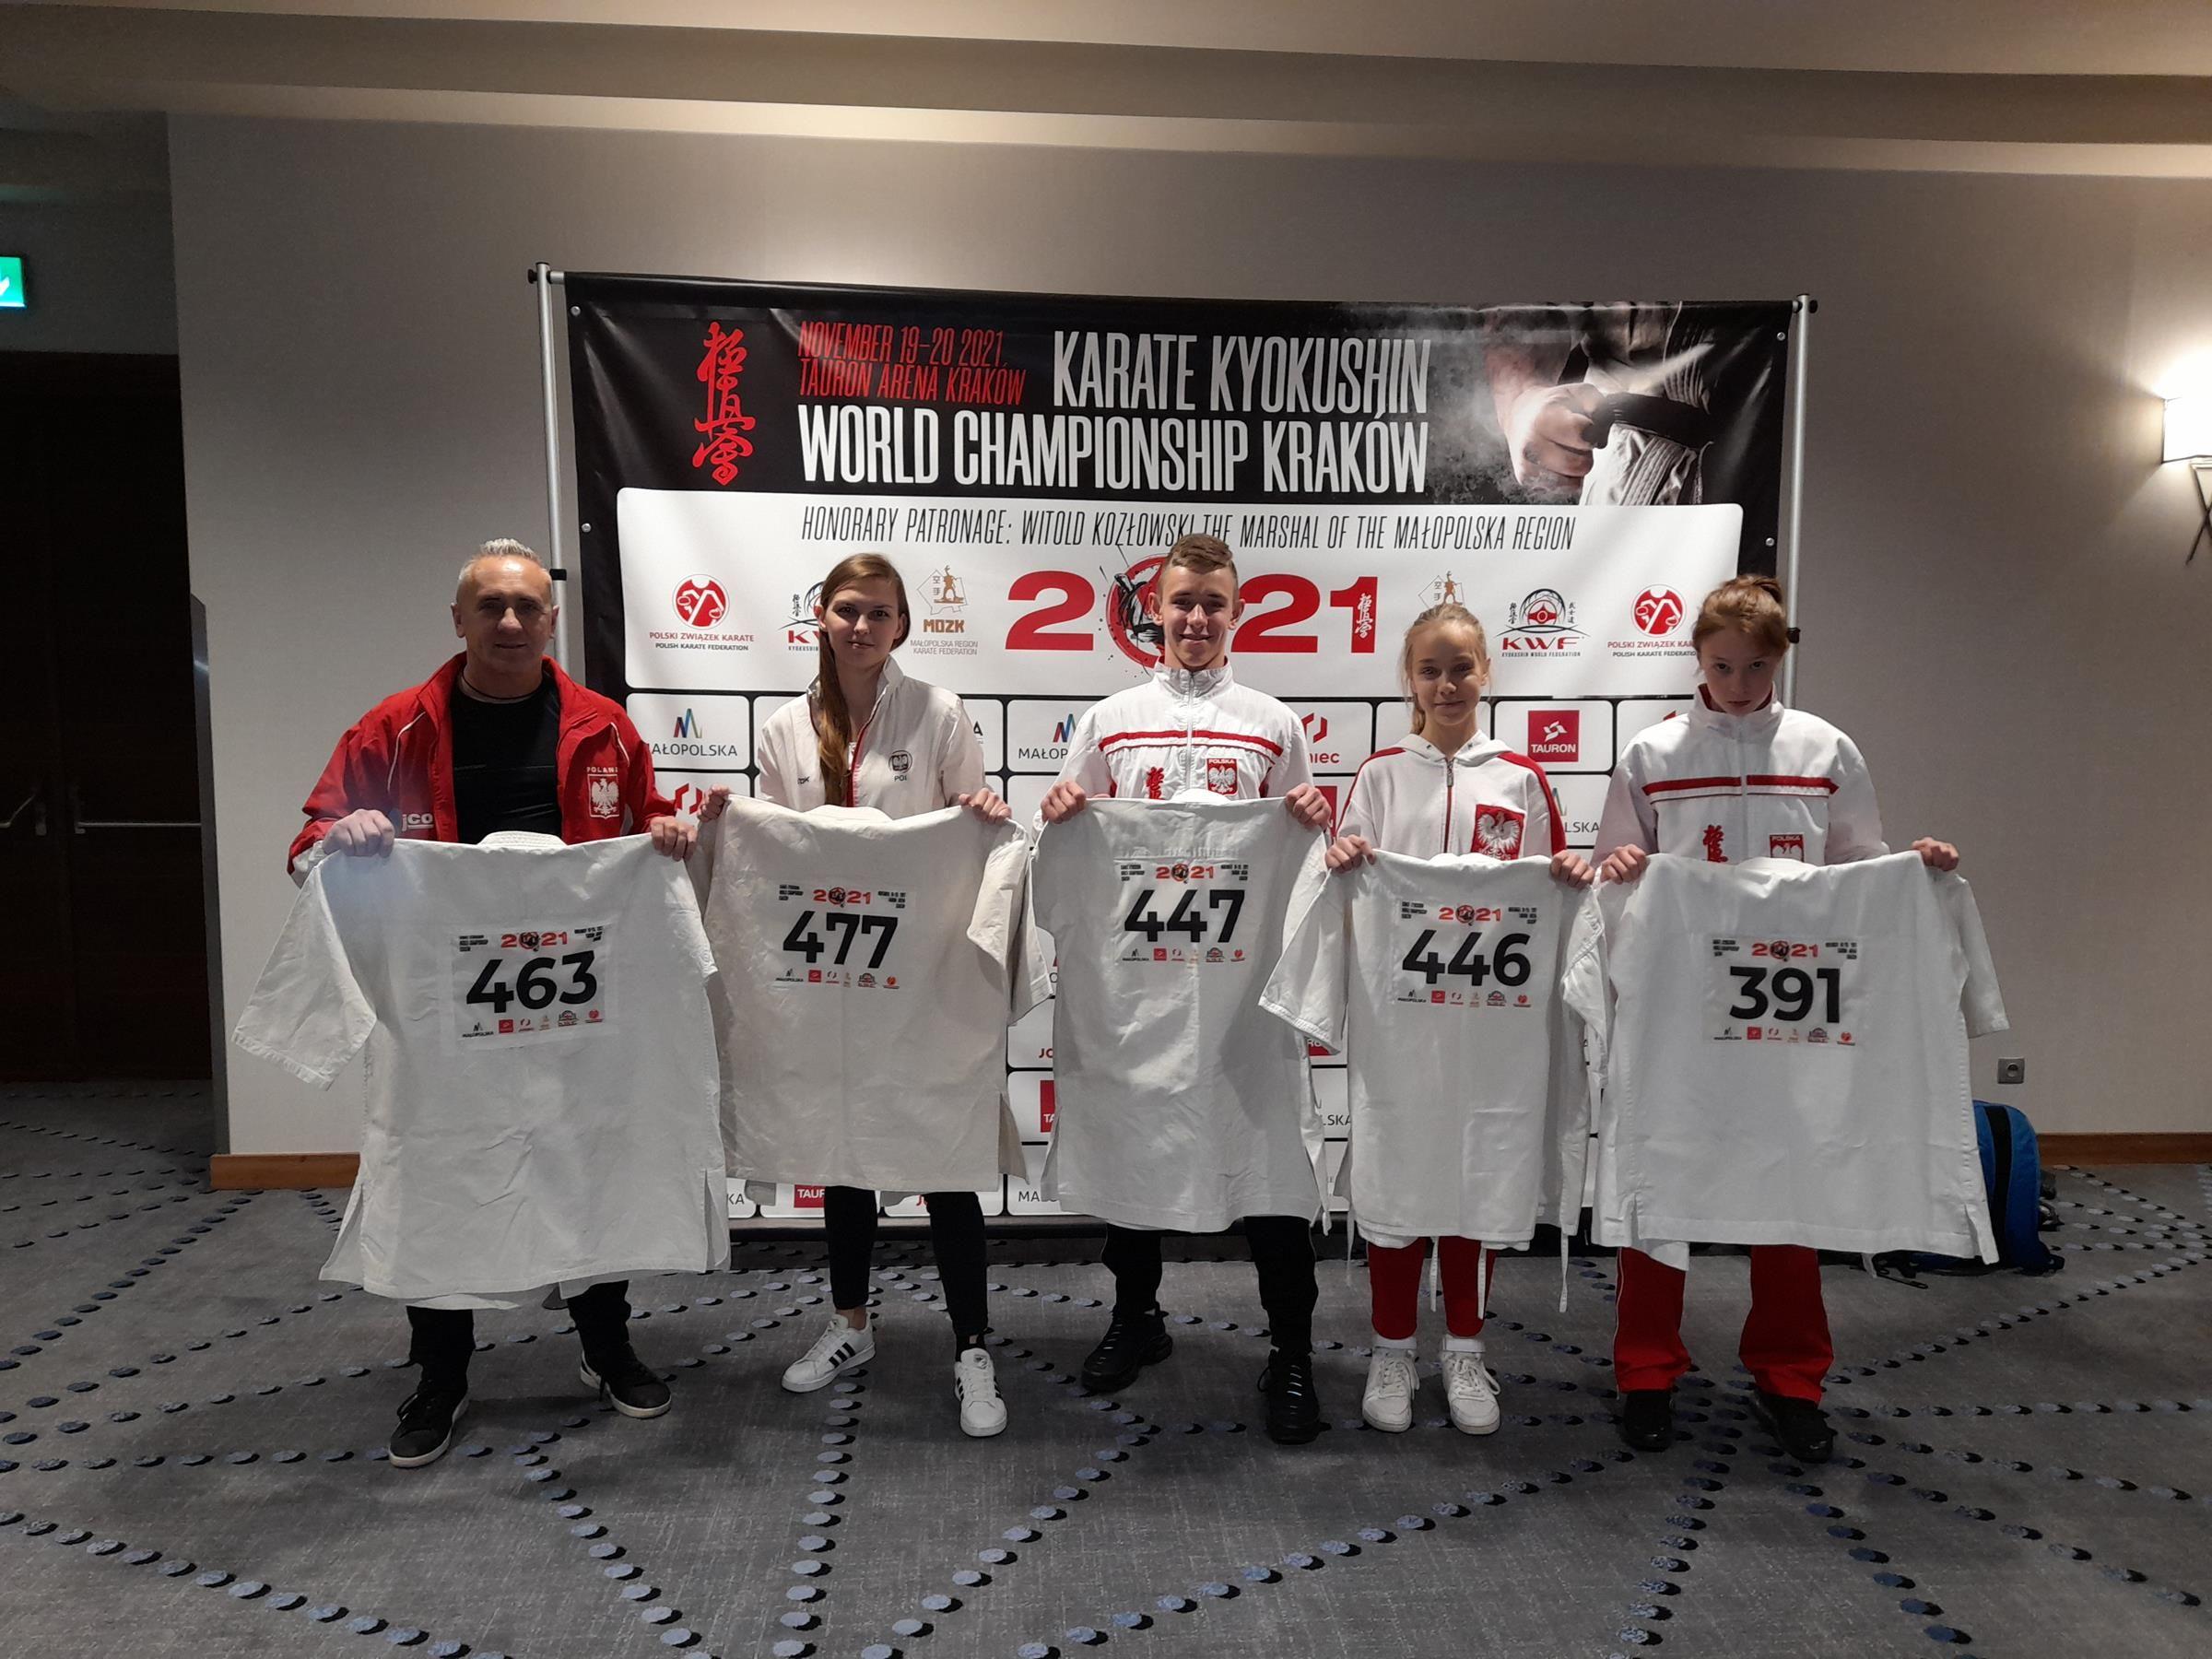 Zdj. nr. 2. Mistrzostw Świata w Karate Kyokushin - 19-20.11.2021 r., Kraków